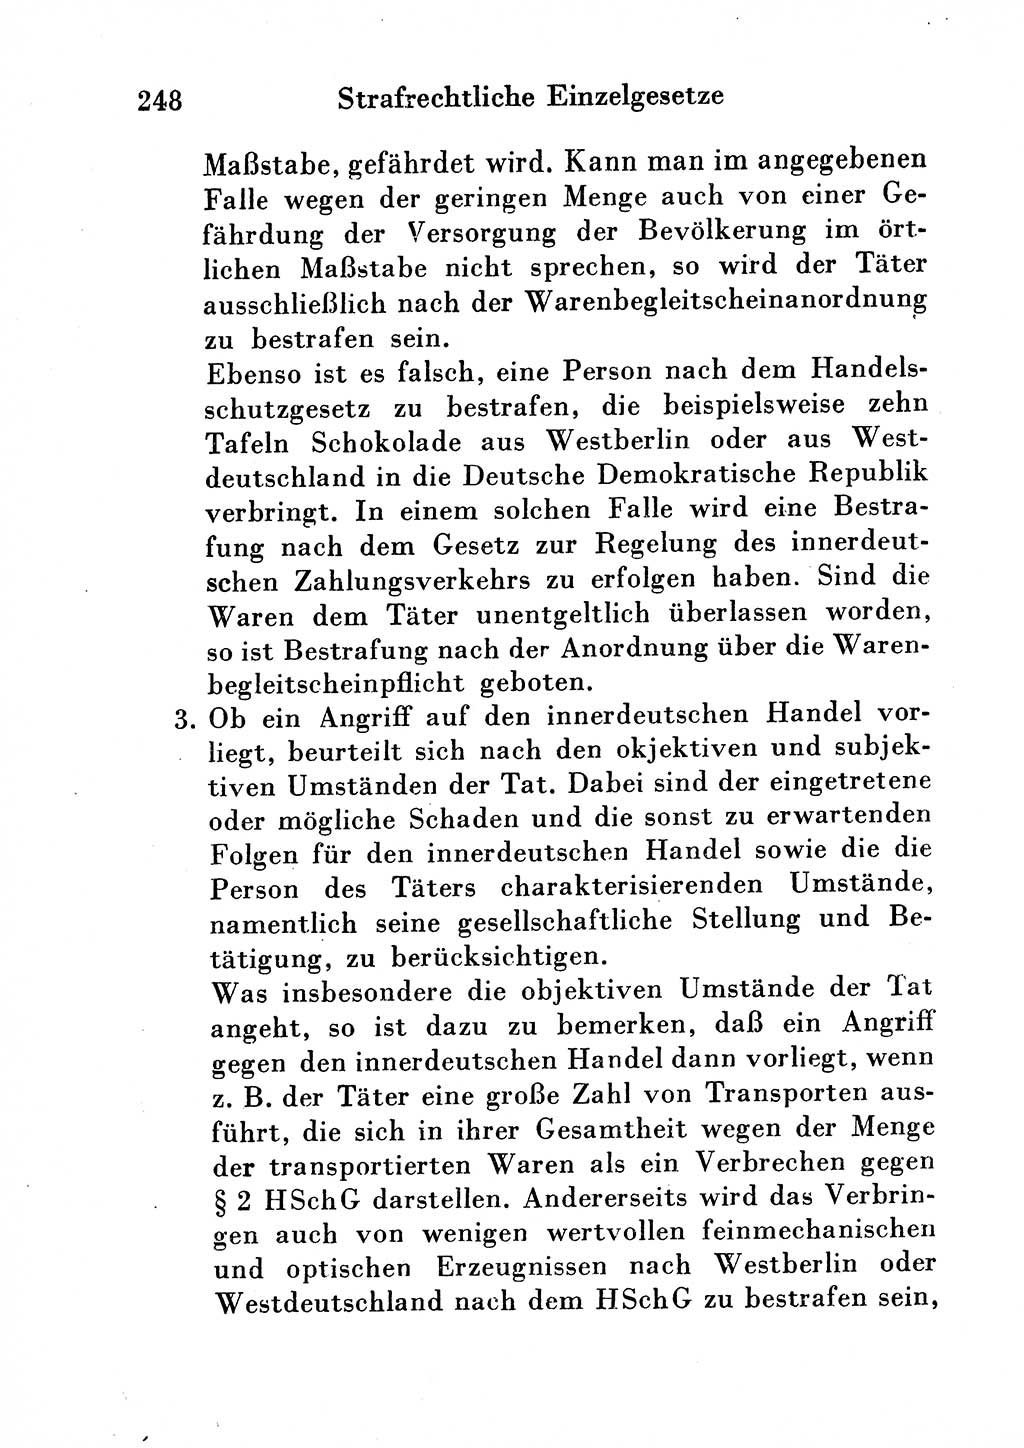 Strafgesetzbuch (StGB) und andere Strafgesetze [Deutsche Demokratische Republik (DDR)] 1954, Seite 248 (StGB Strafges. DDR 1954, S. 248)